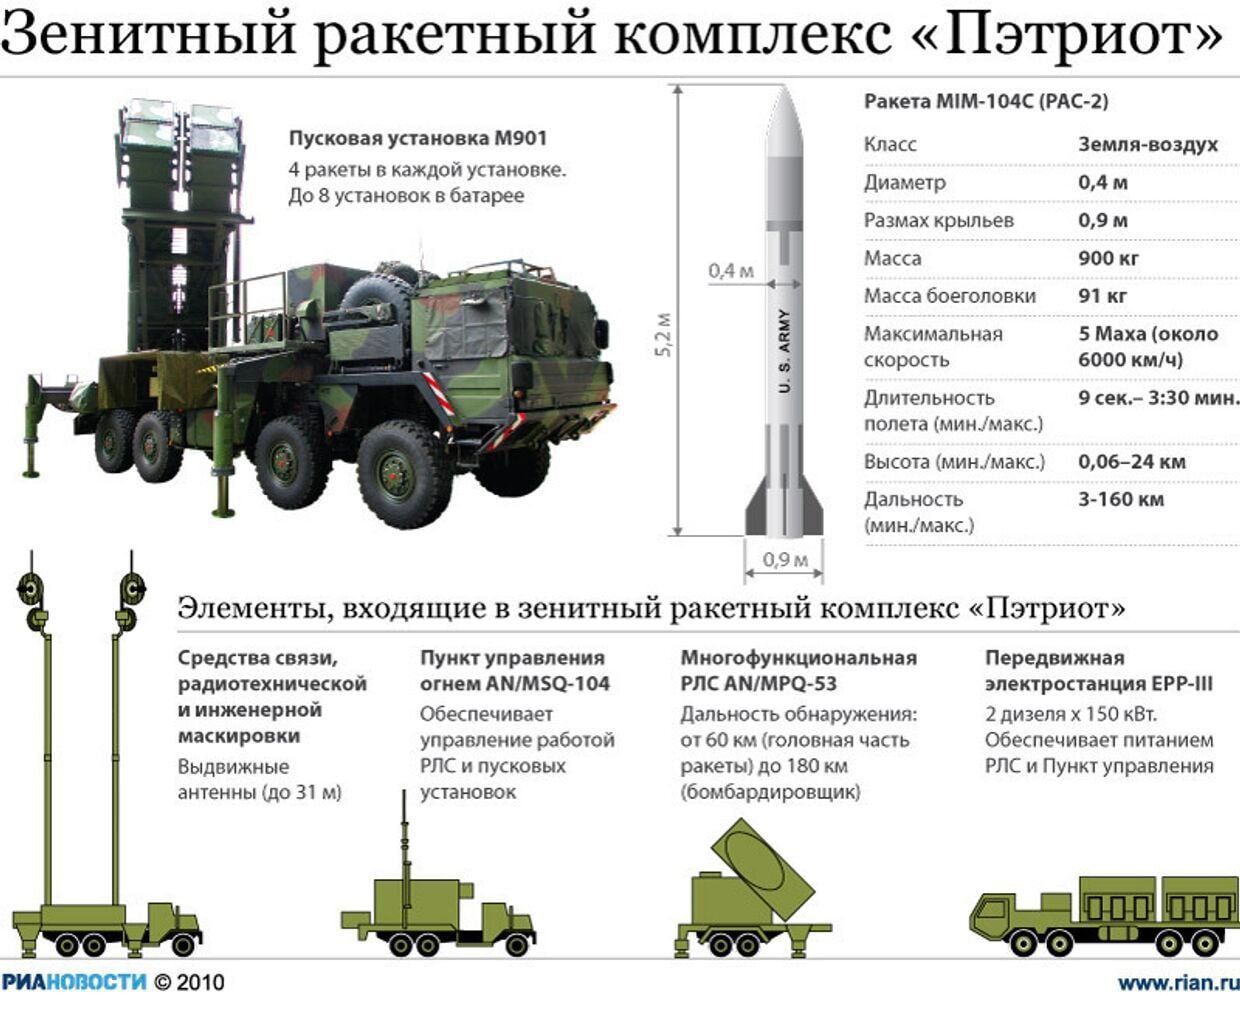 Сколько установок на украине. Батарея ЗРК Пэтриот Pac-1. ЗРК Патриот сравнения с с 400. Состав батареи ЗРК Пэтриот. Пэтриот зенитный ракетный комплекс и с 300.